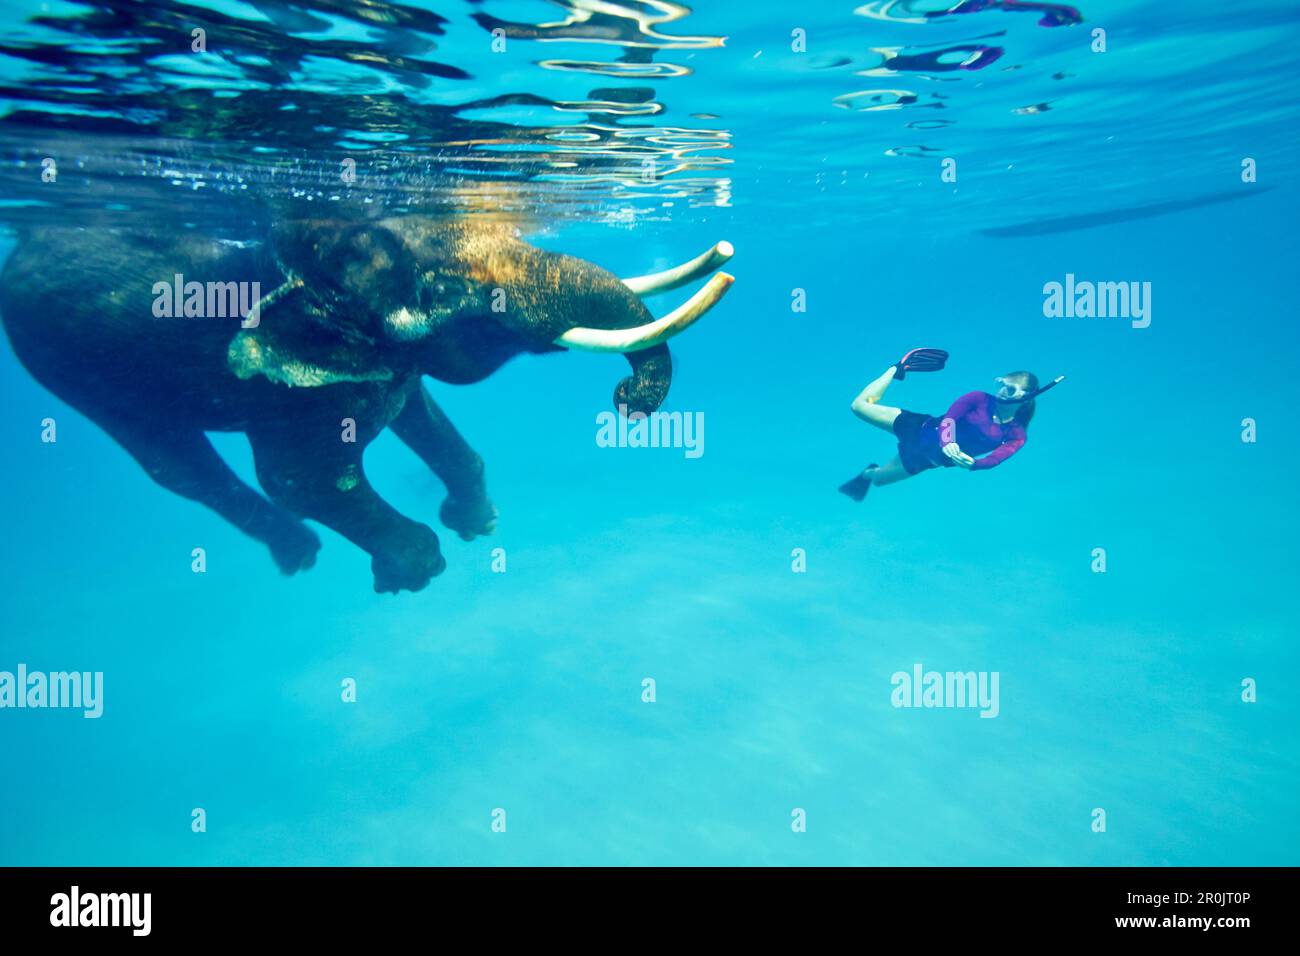 Schwimmender Elefant Rajan, Taucher von der Barefoot Scuba Diving School, begleitet von ihm, am Strand Nr. 7, Havelock Island, Andaman Islands, Union Territo Stockfoto